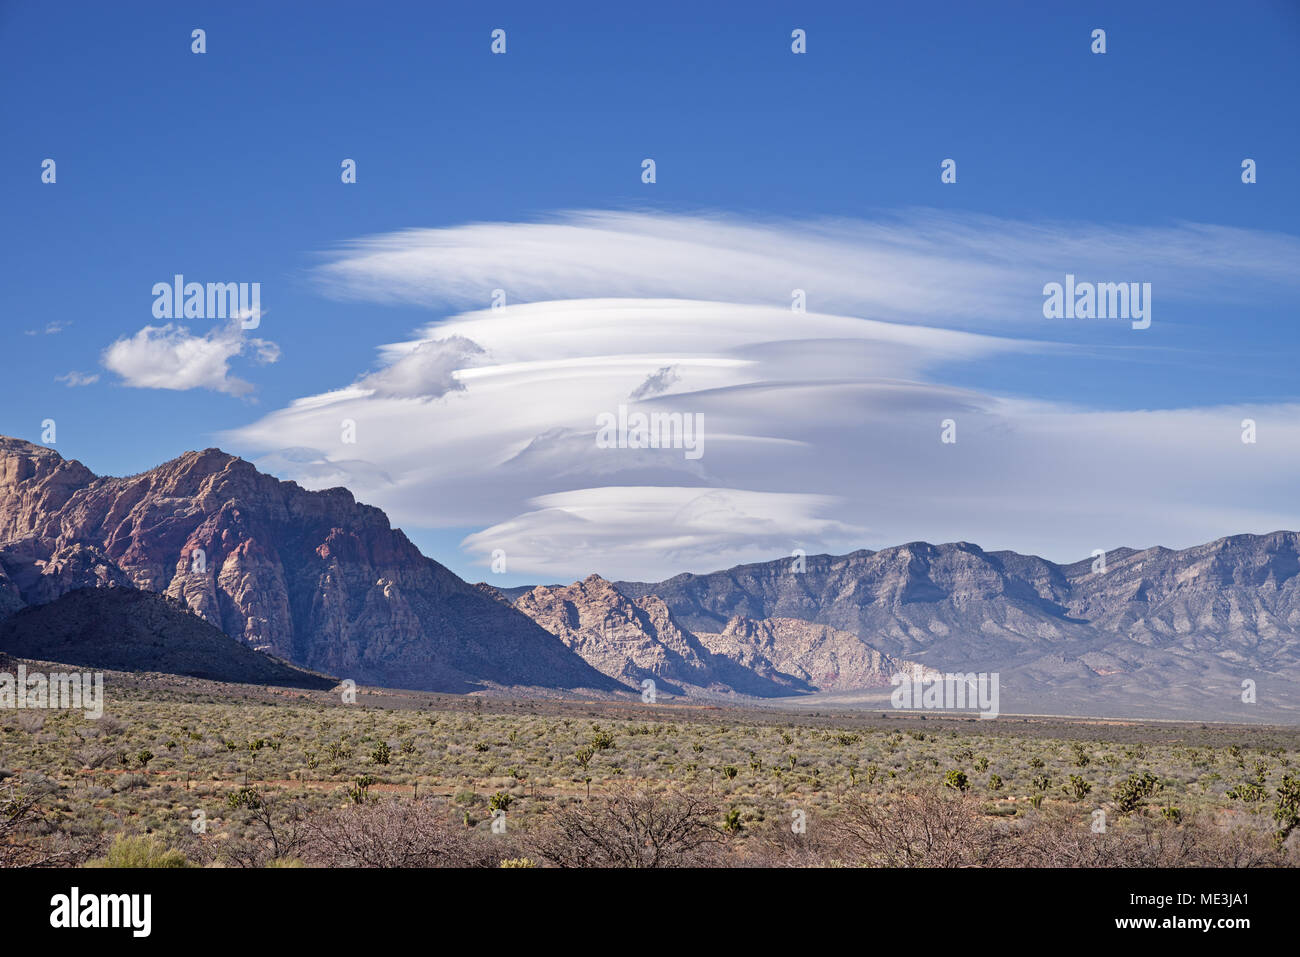 Linsenförmige Wolken bilden über die Berge nördlich und westlich von Las Vegas Stockfoto